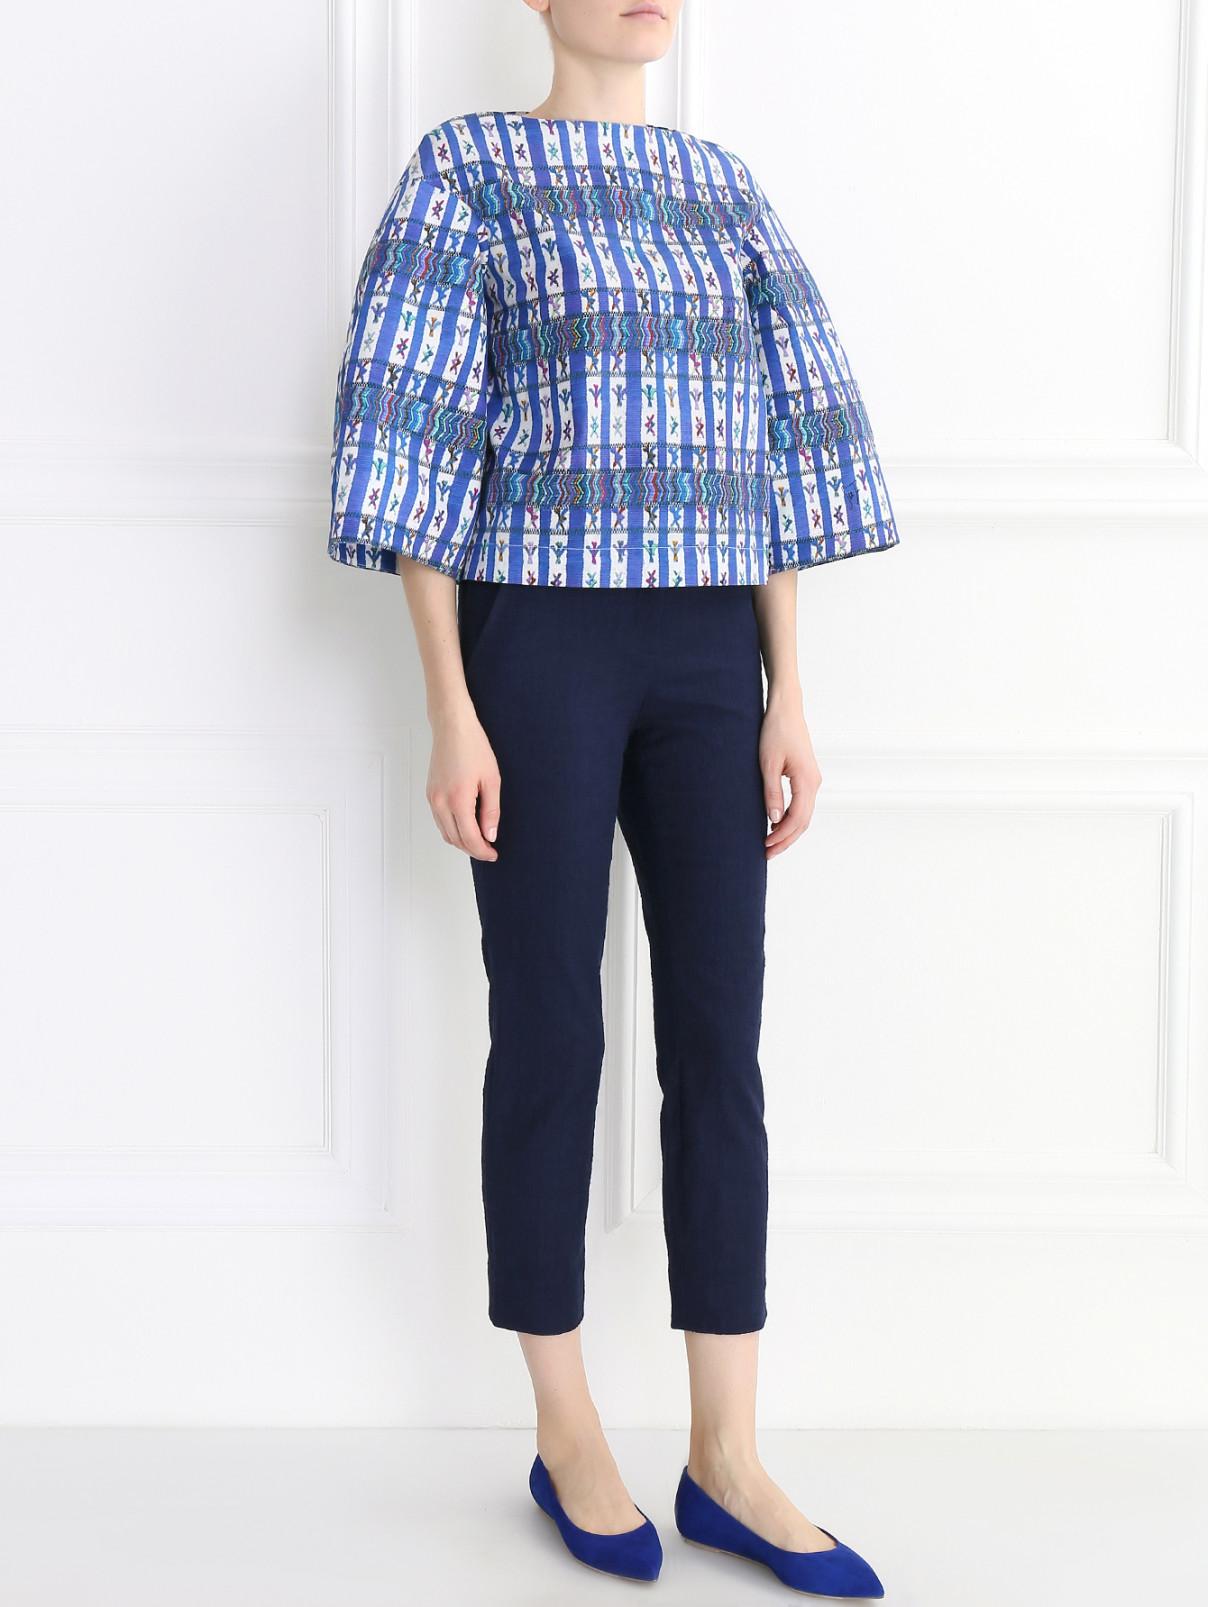 Укороченные брюки из хлопка Diane von Furstenberg  –  Модель Общий вид  – Цвет:  Синий